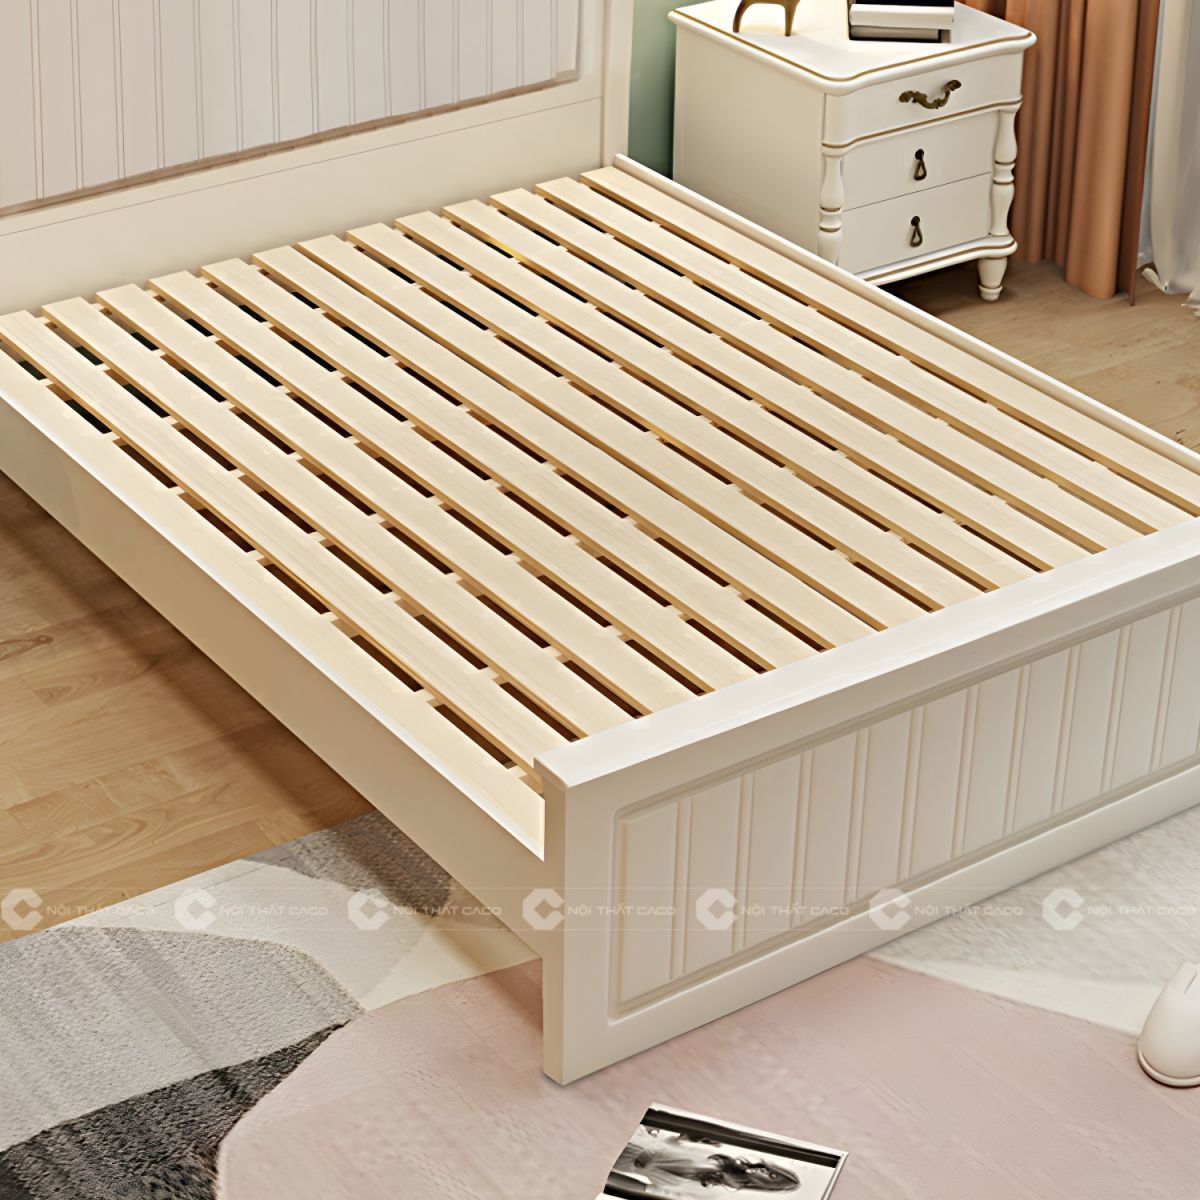 Giường ngủ gỗ tự nhiên có thang giường chắc chắn